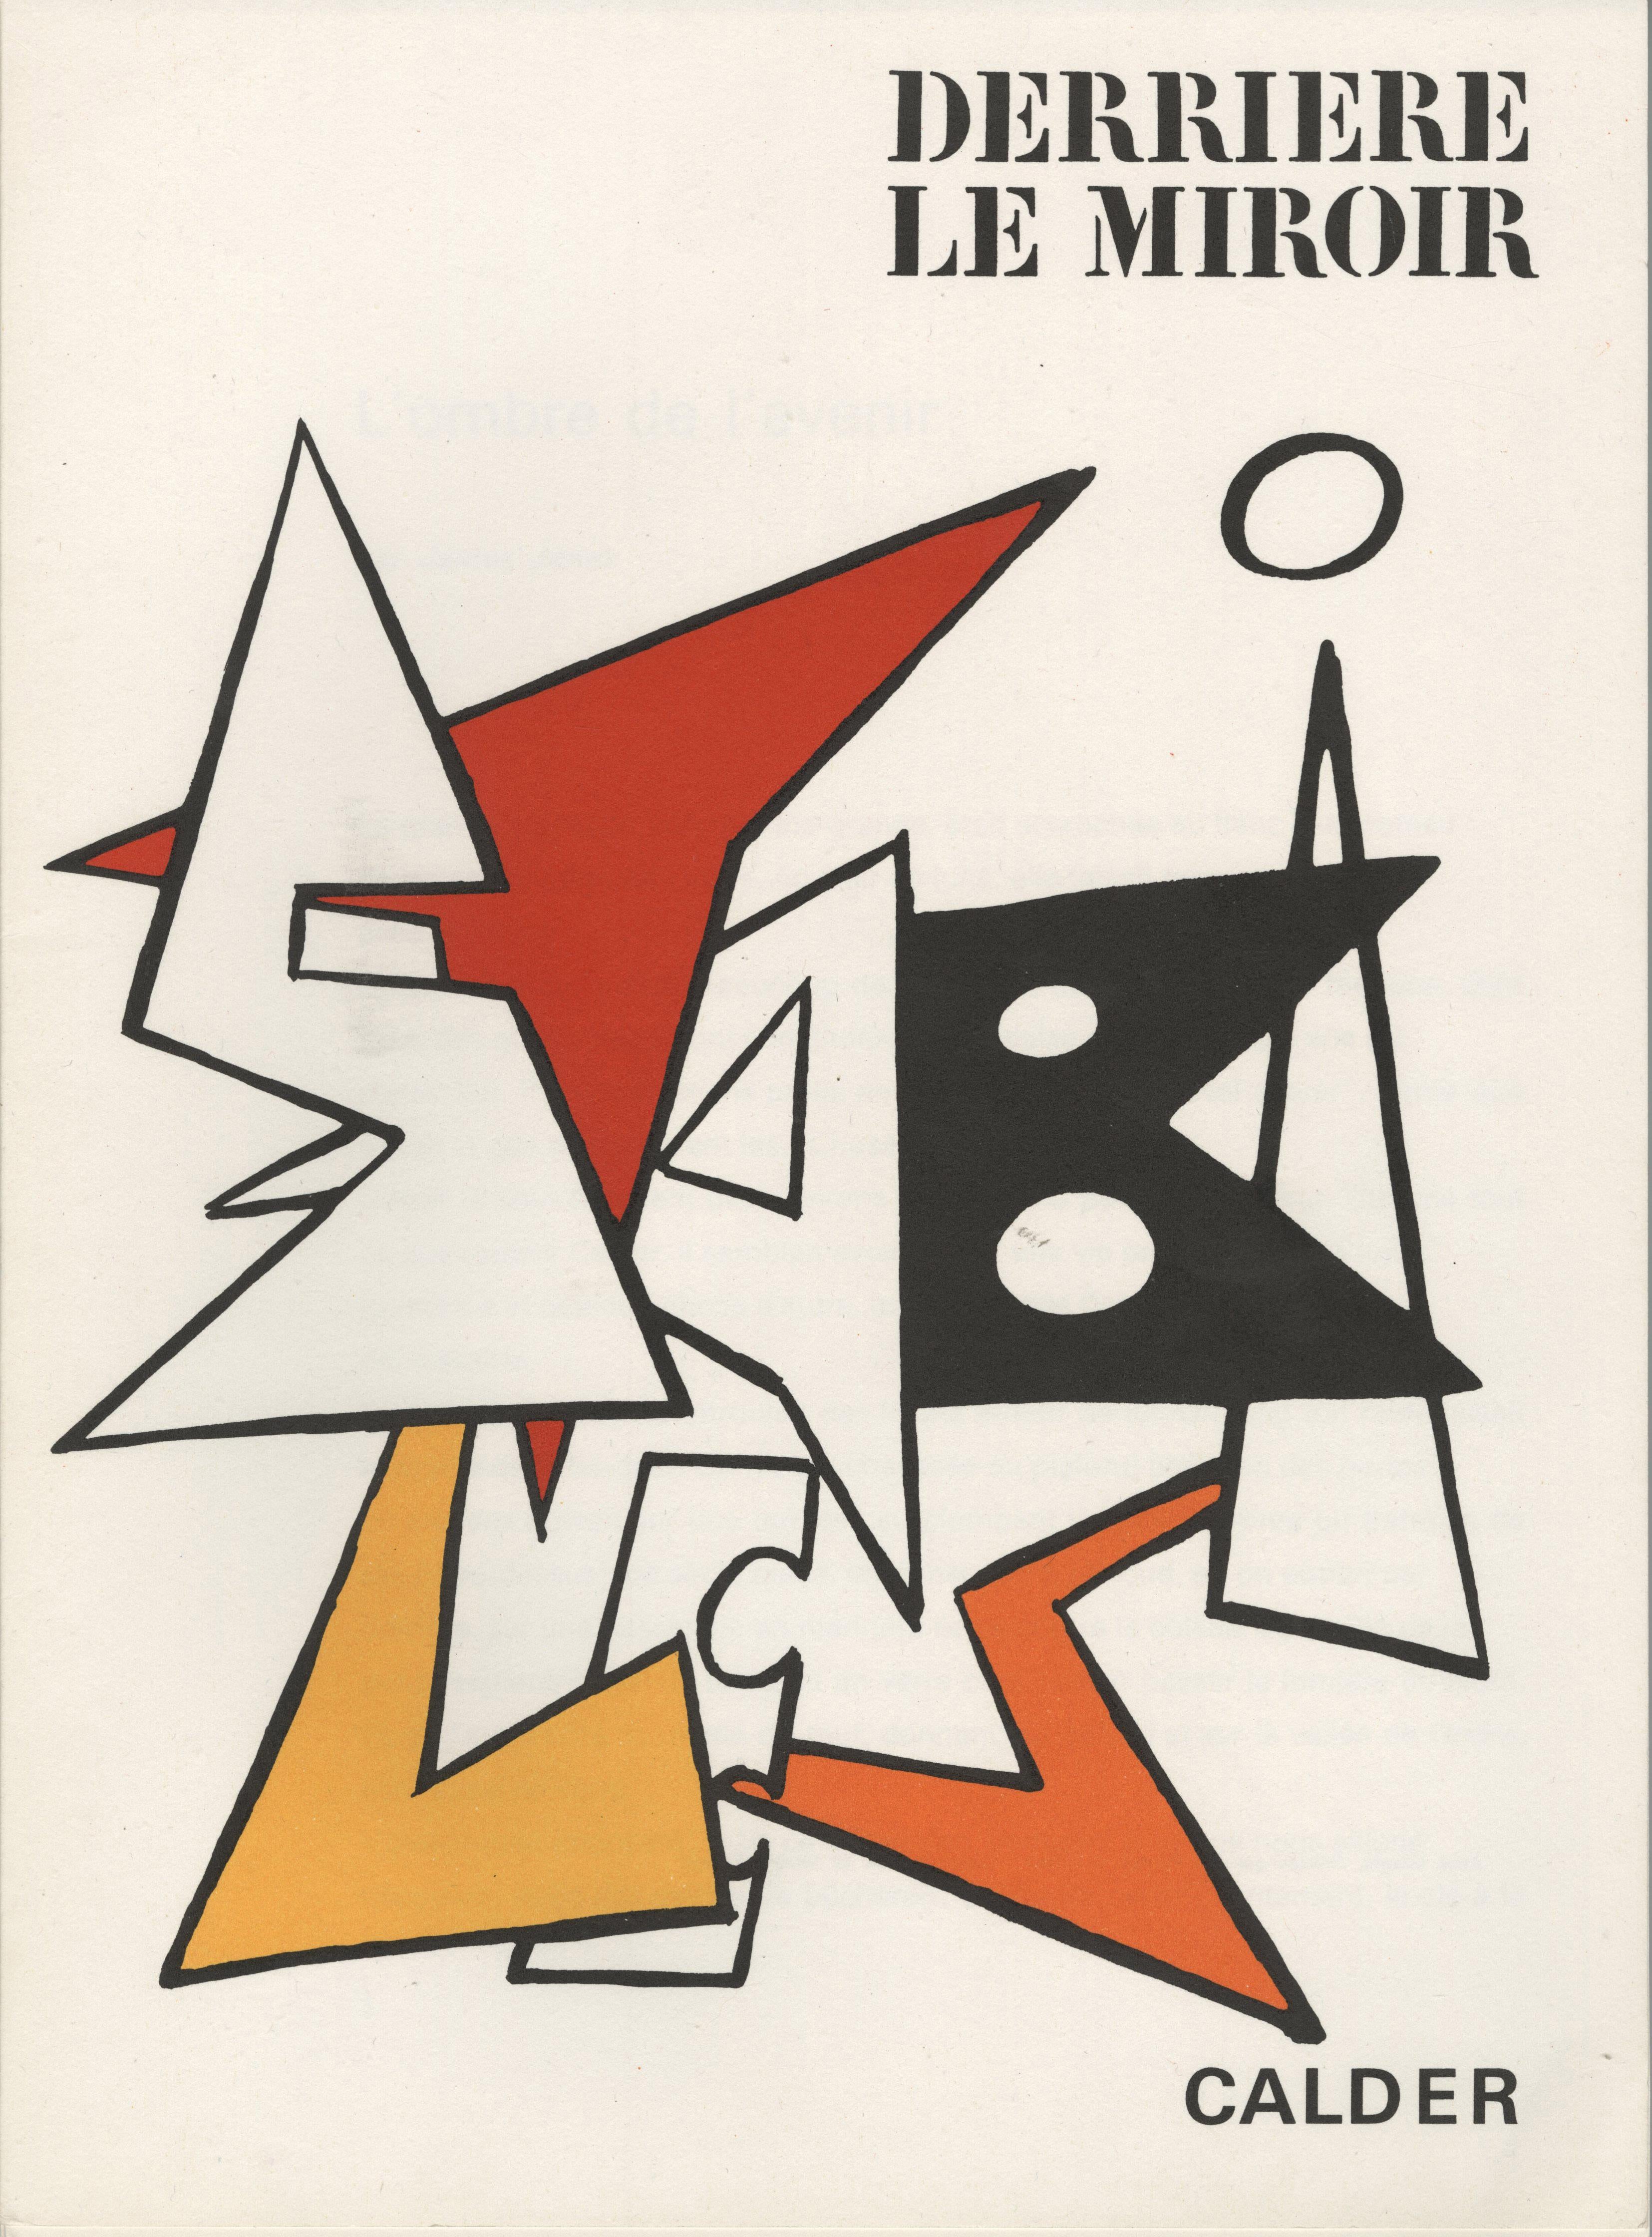 Abstract Print Alexander Calder - Derrier le Miroir, couverture, Volume 141